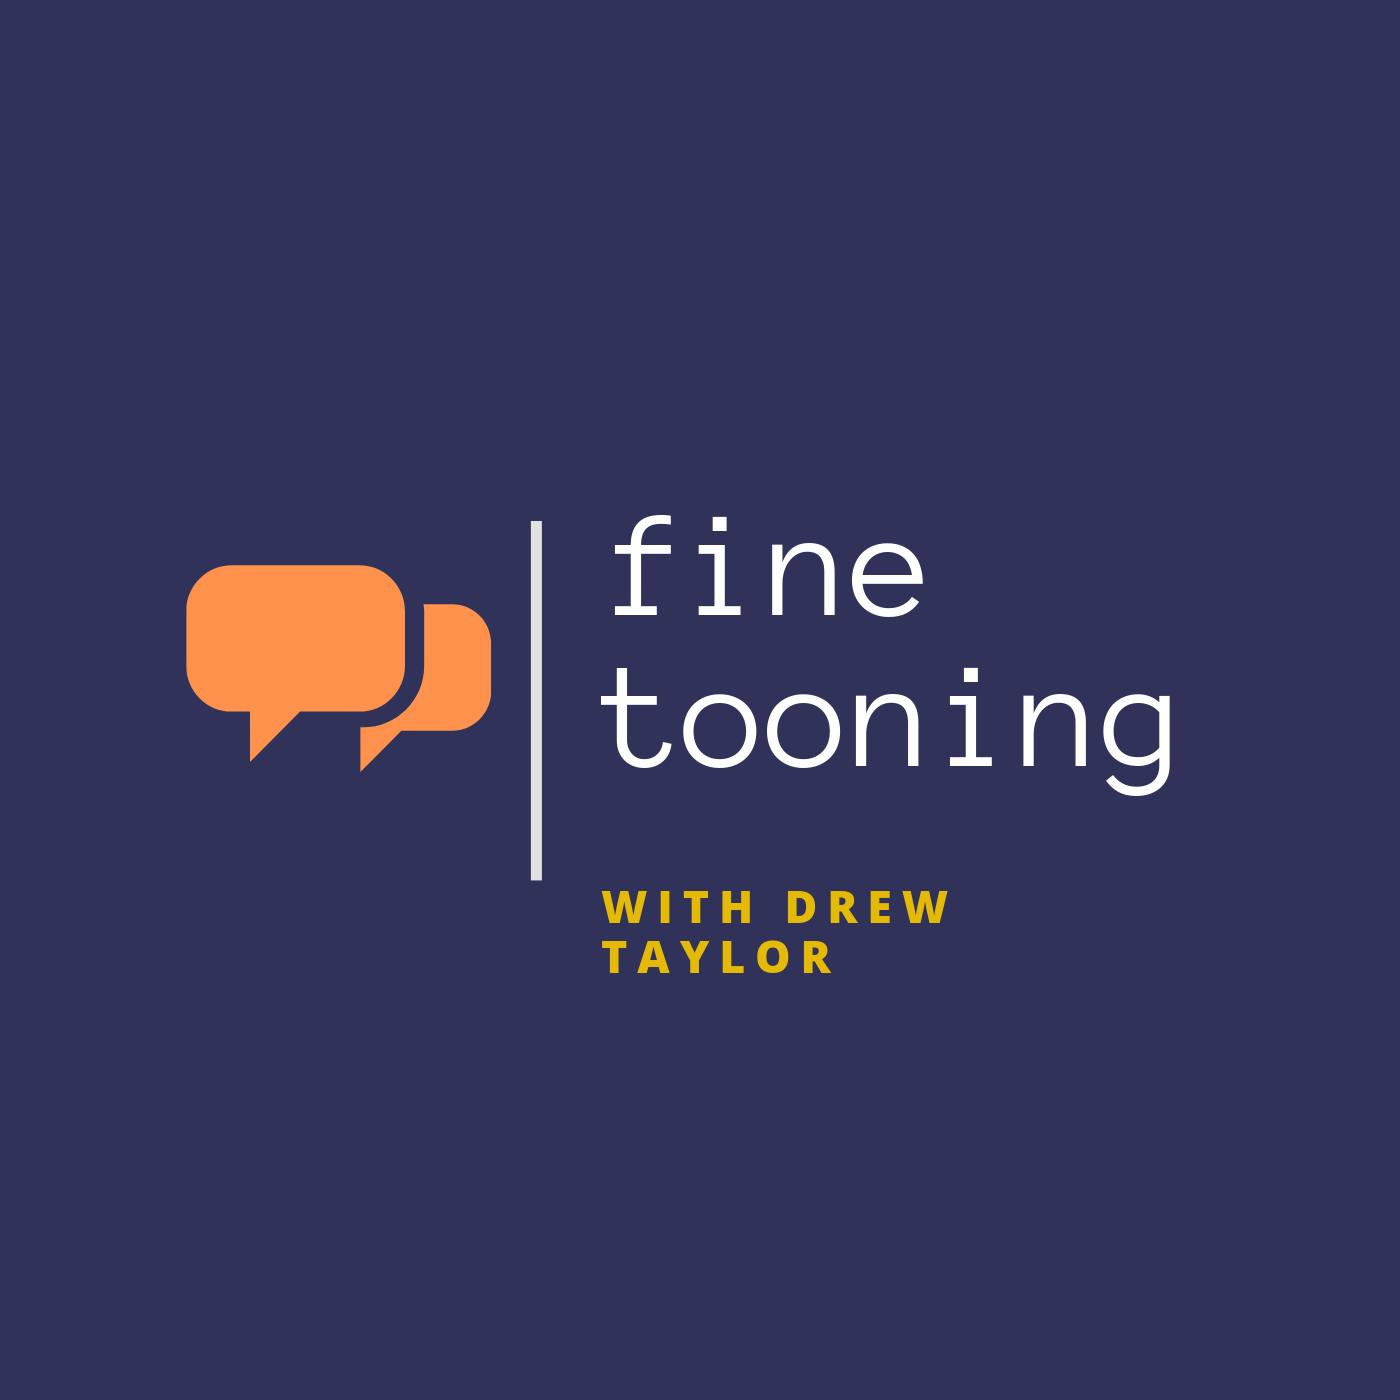 Fine Tooning with Drew Taylor - Episode 140: Craig Gillespie talks about directing Disney’s “Cruella”